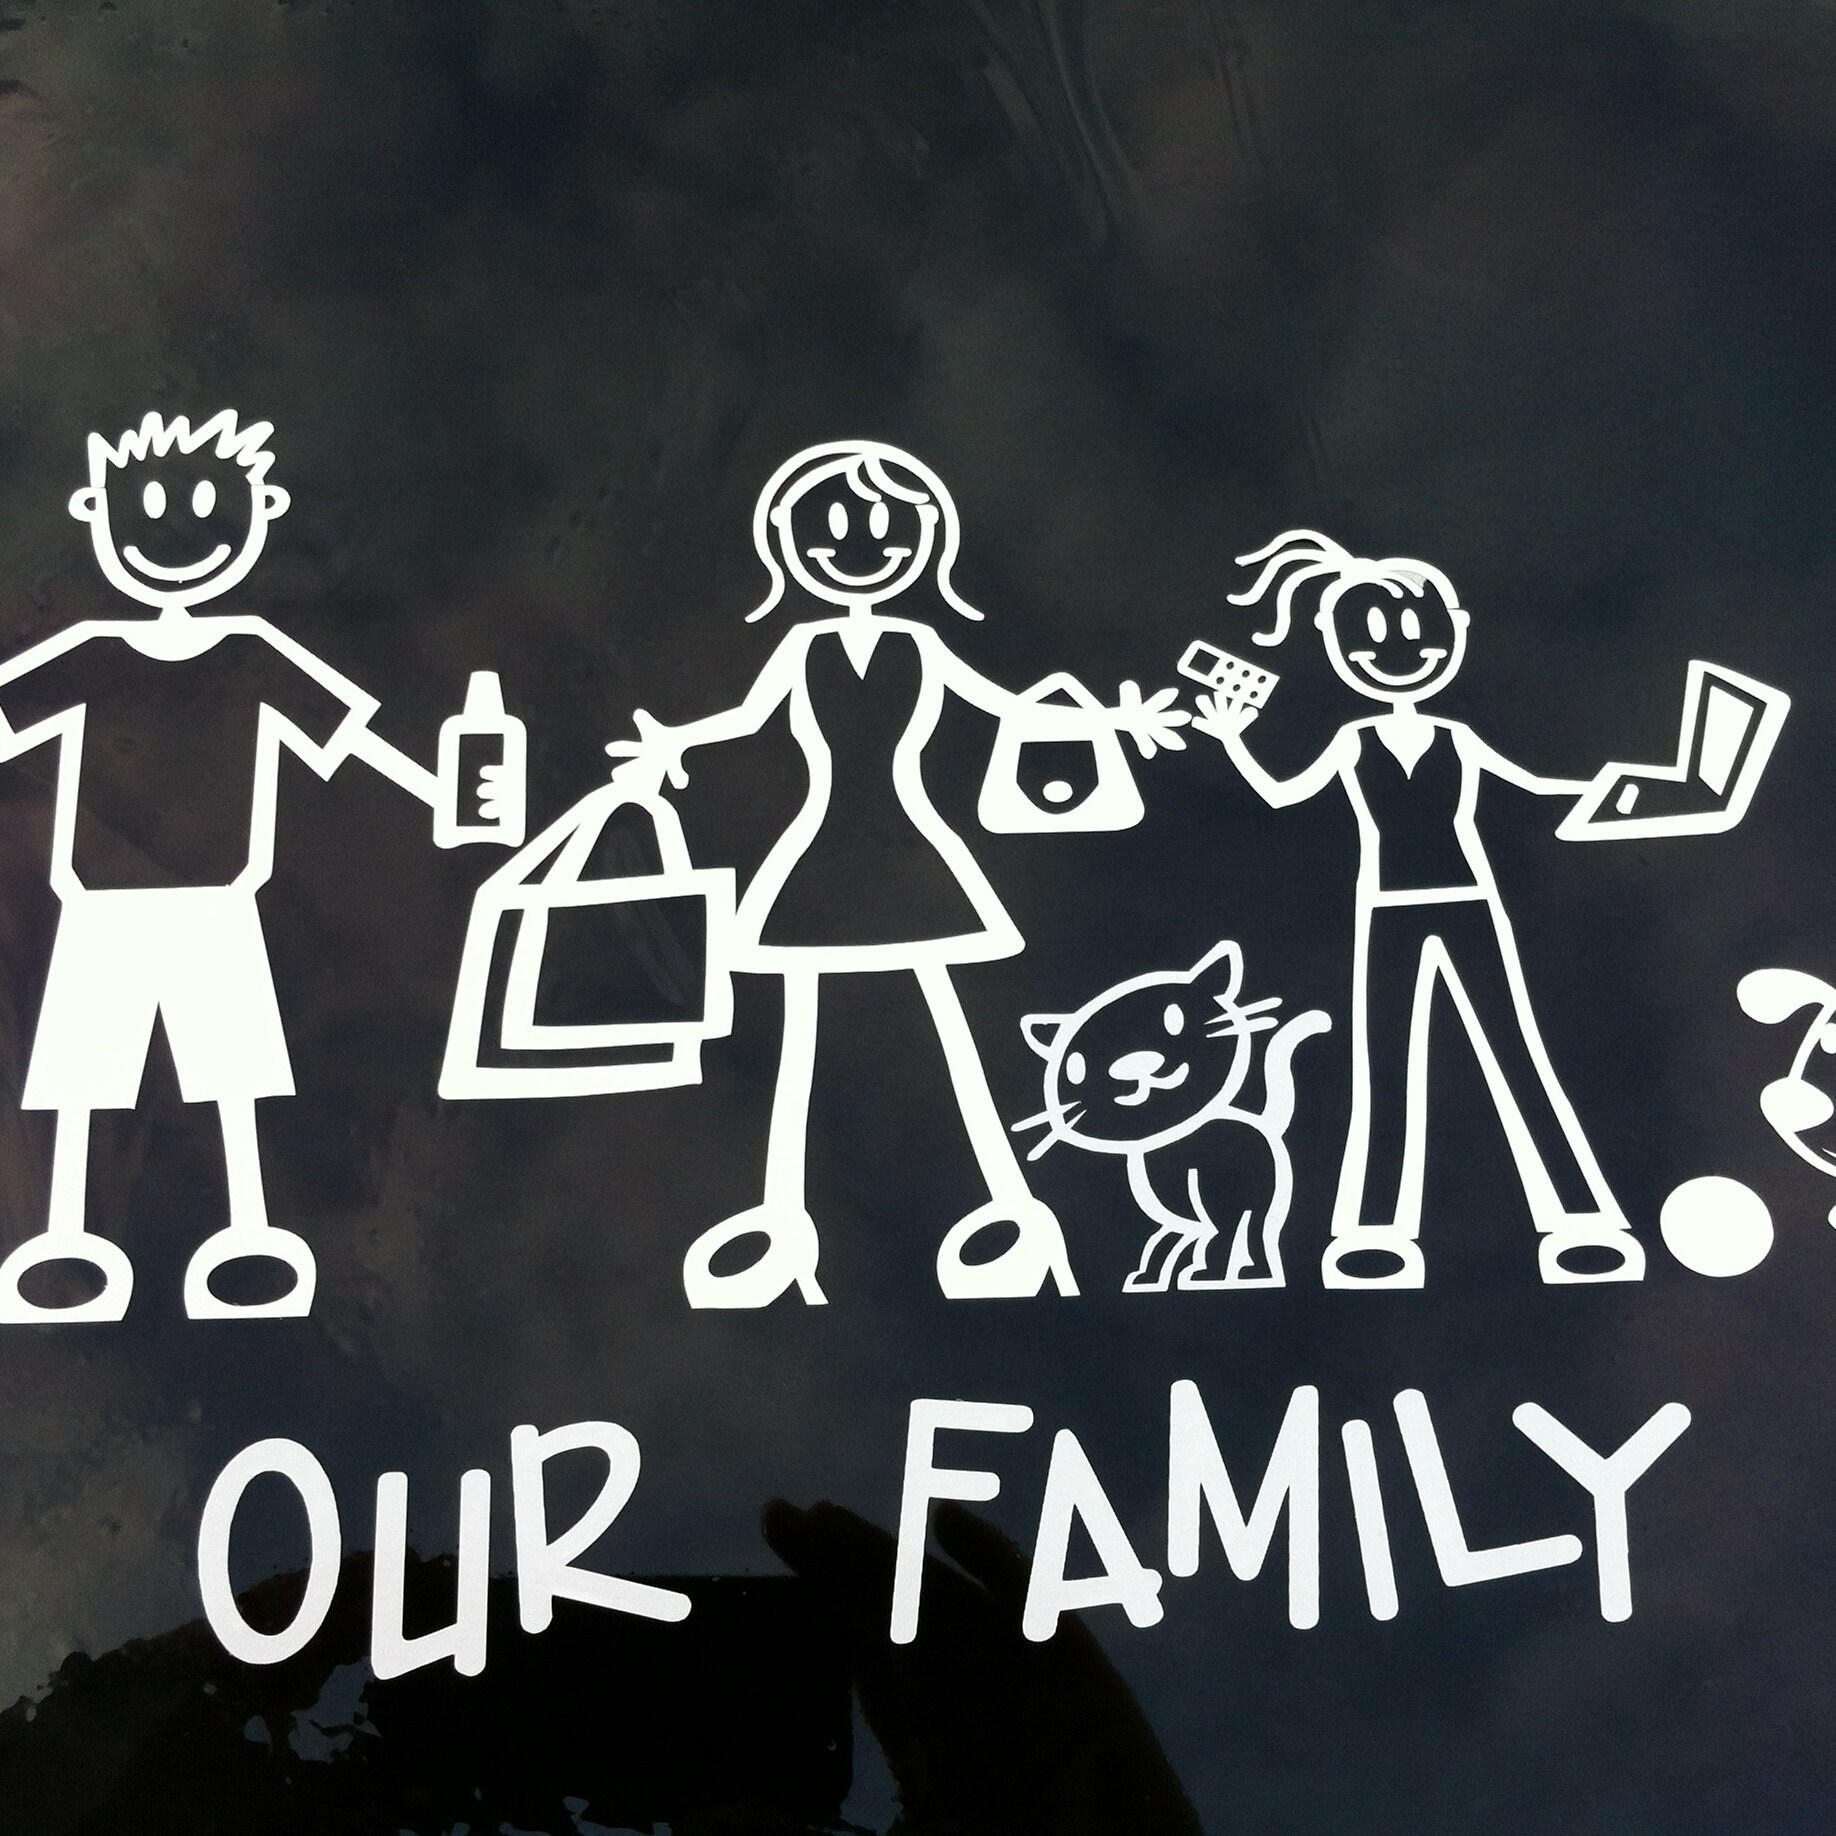 Моя семья (+ наклейки). Наклейка на машину семья. Наклейки на машину семья человечки. Стикеры семья. My family car